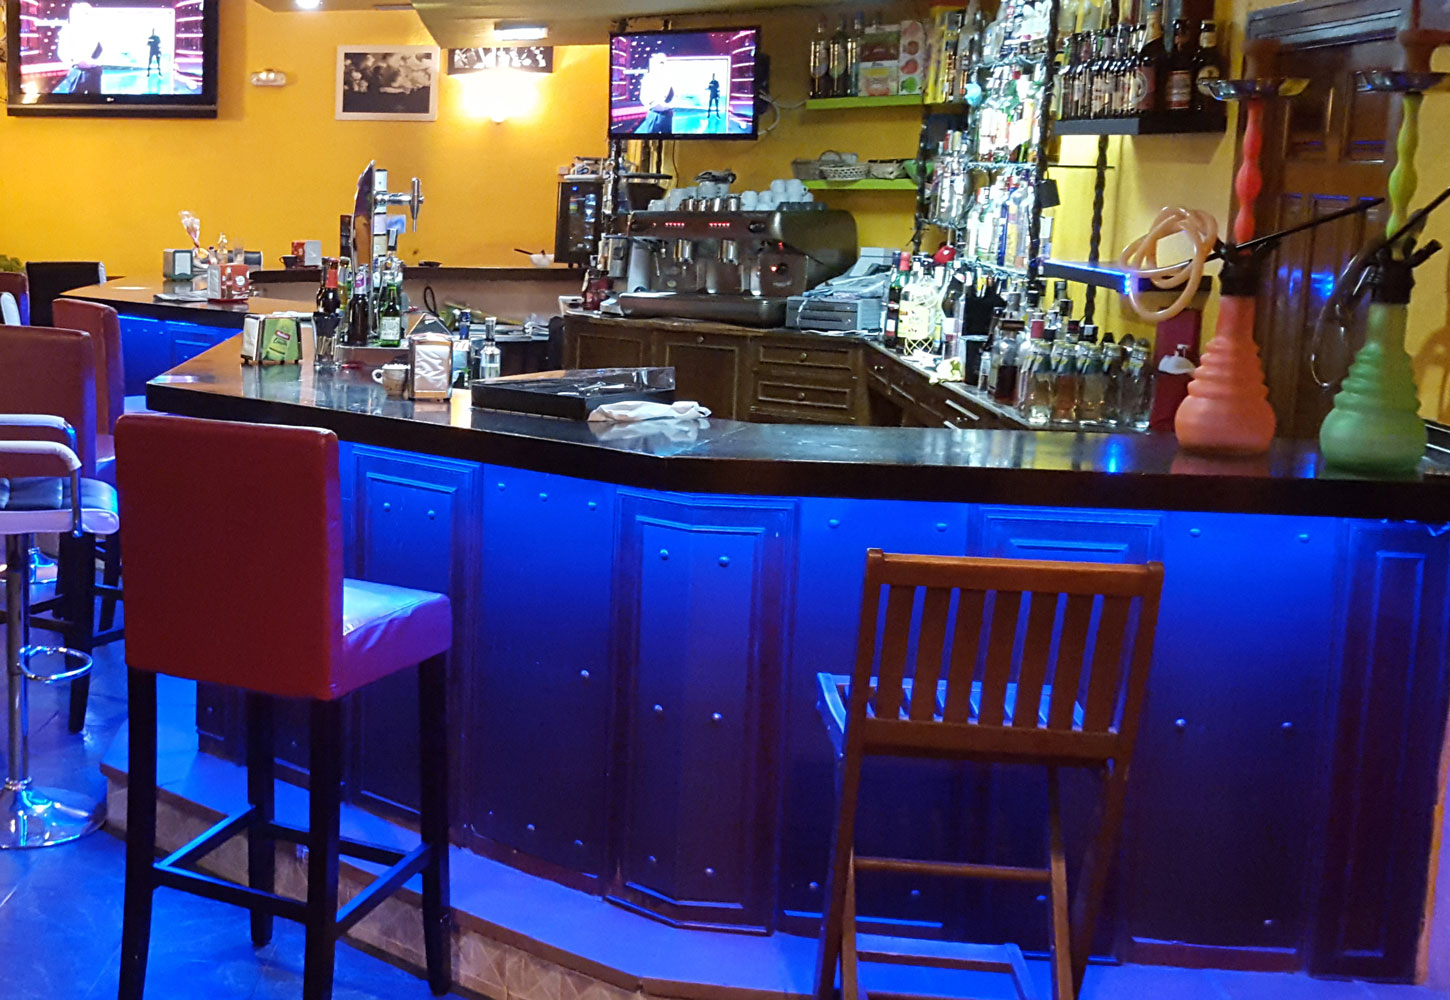 Vive la noche en el Disco-Bar El Patio – Parque El Chorro Navafria | Bar Restaurante | Barbacoas | Información